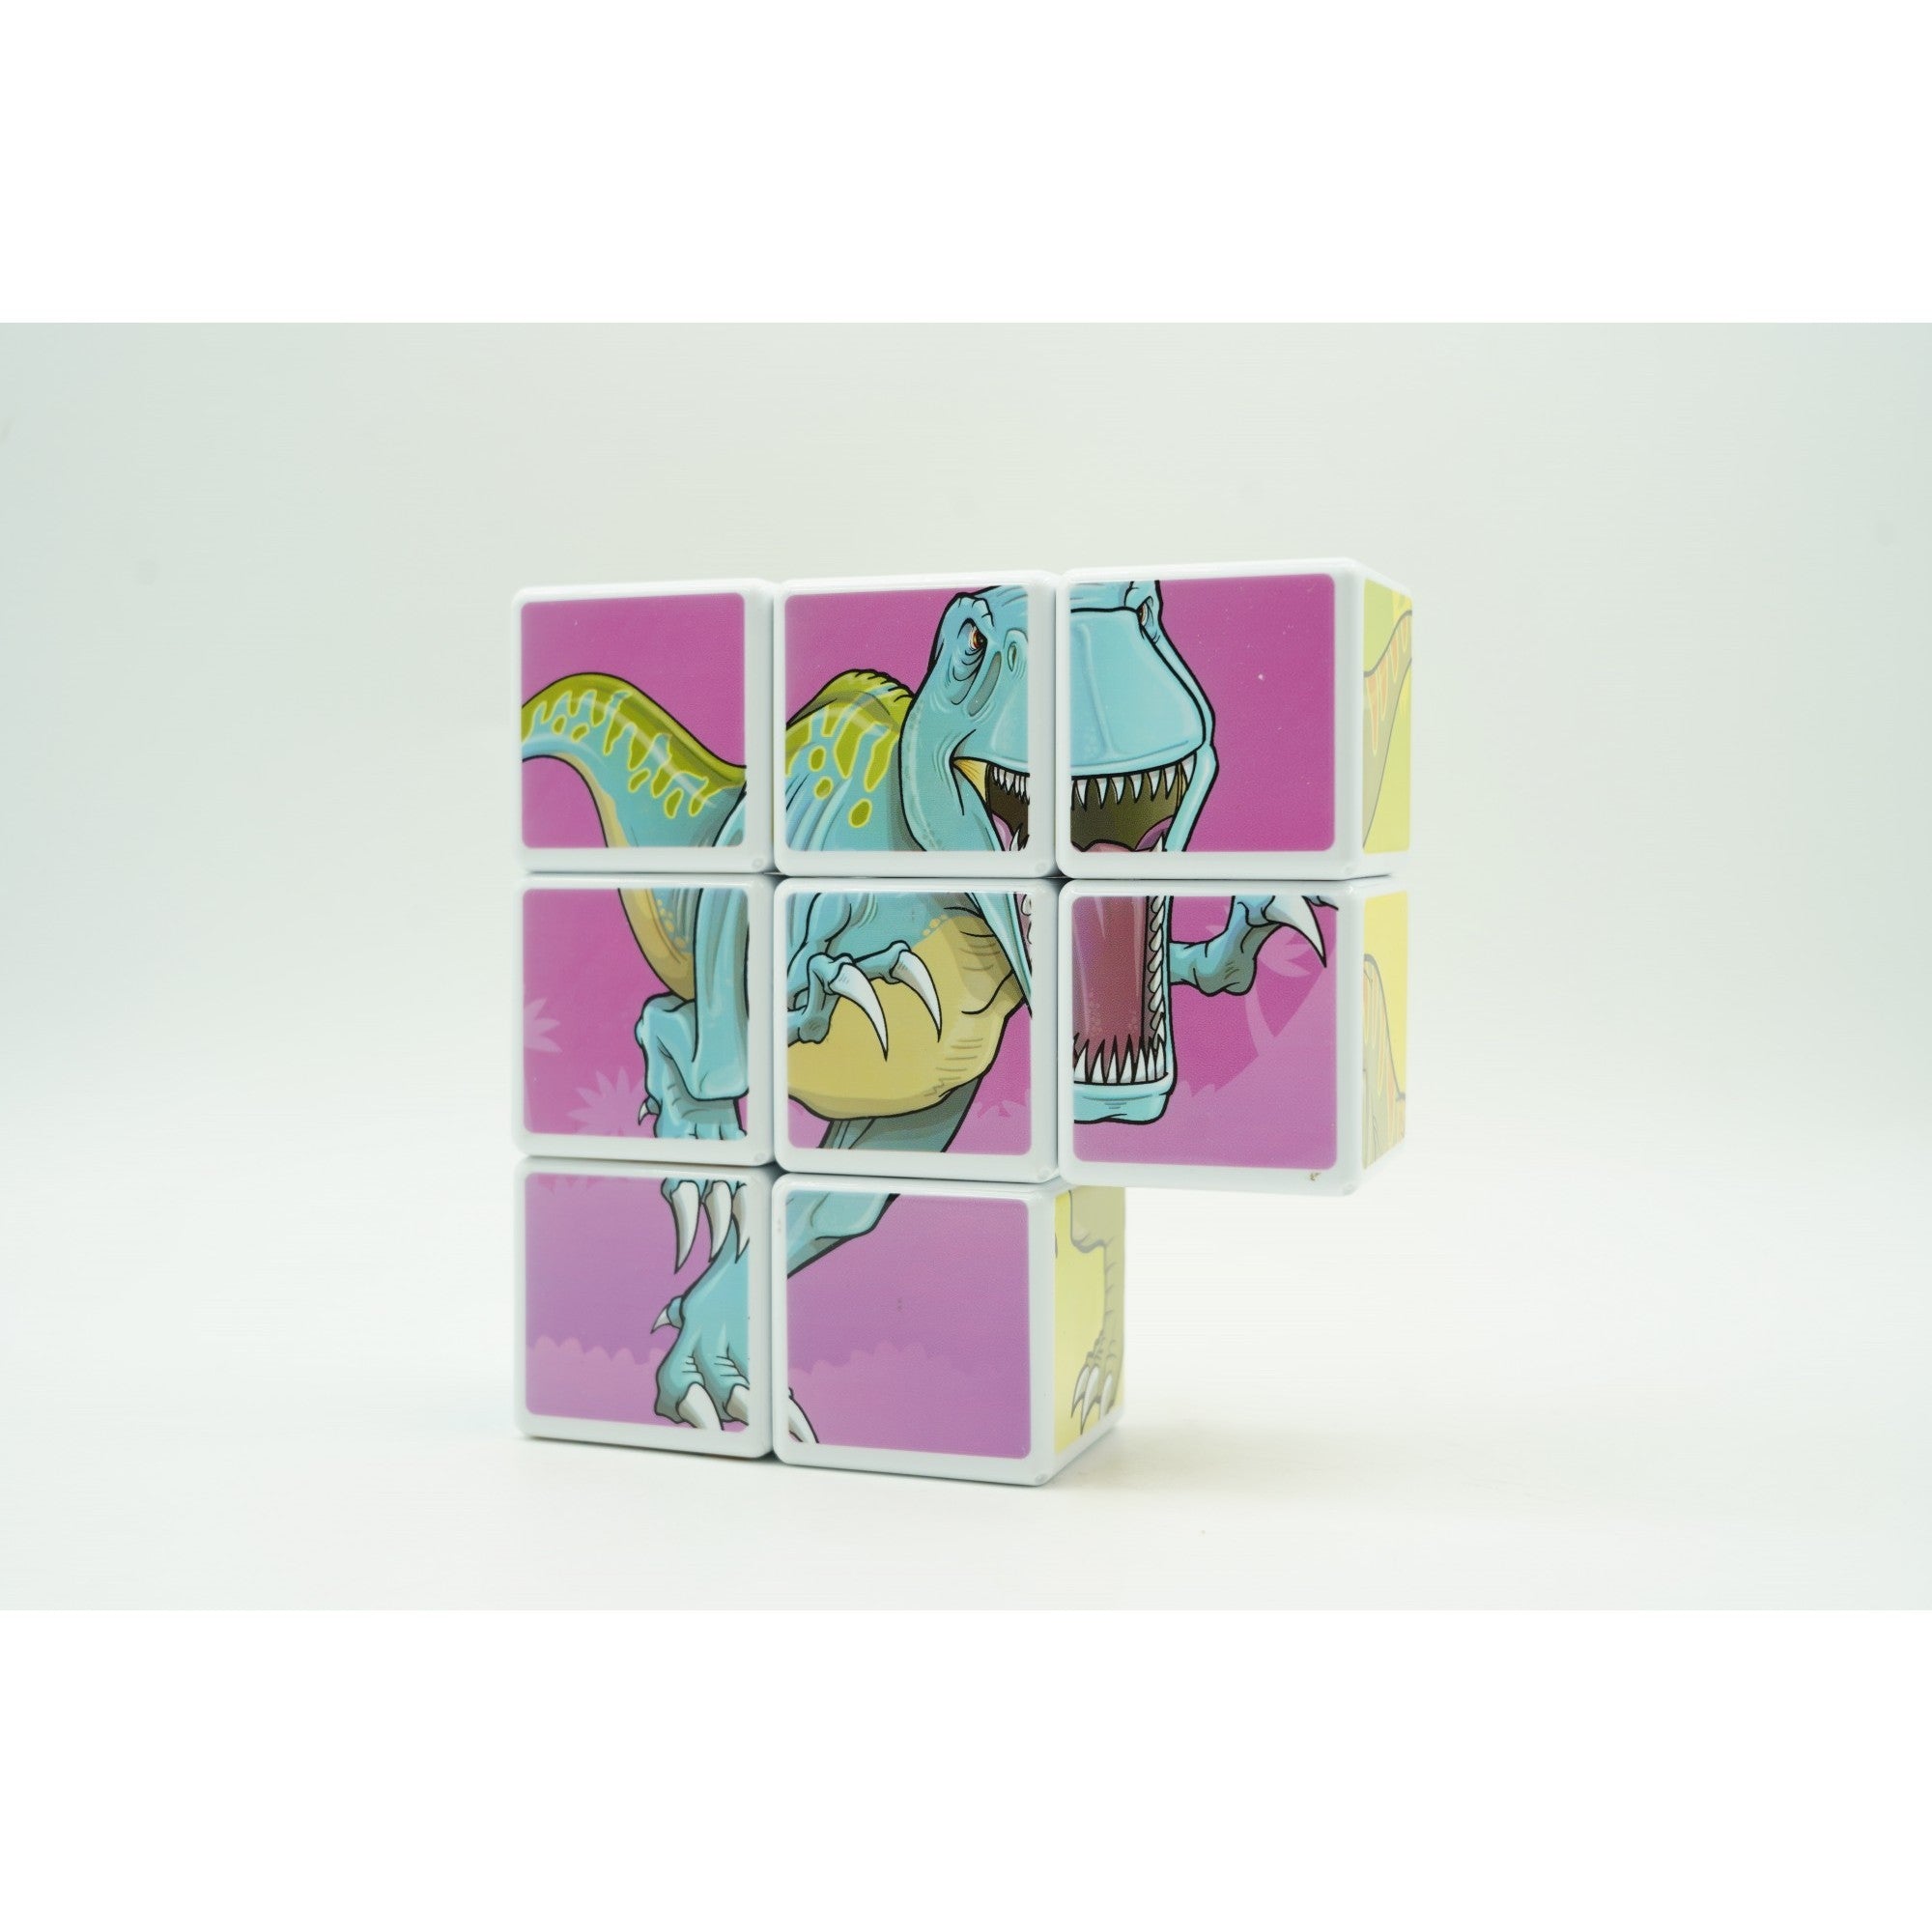 Set inteligent de cuburi magnetice pentru copii, 8 piese, cutie depozitare, puzzle dinozauri, +3 ani, multicolor